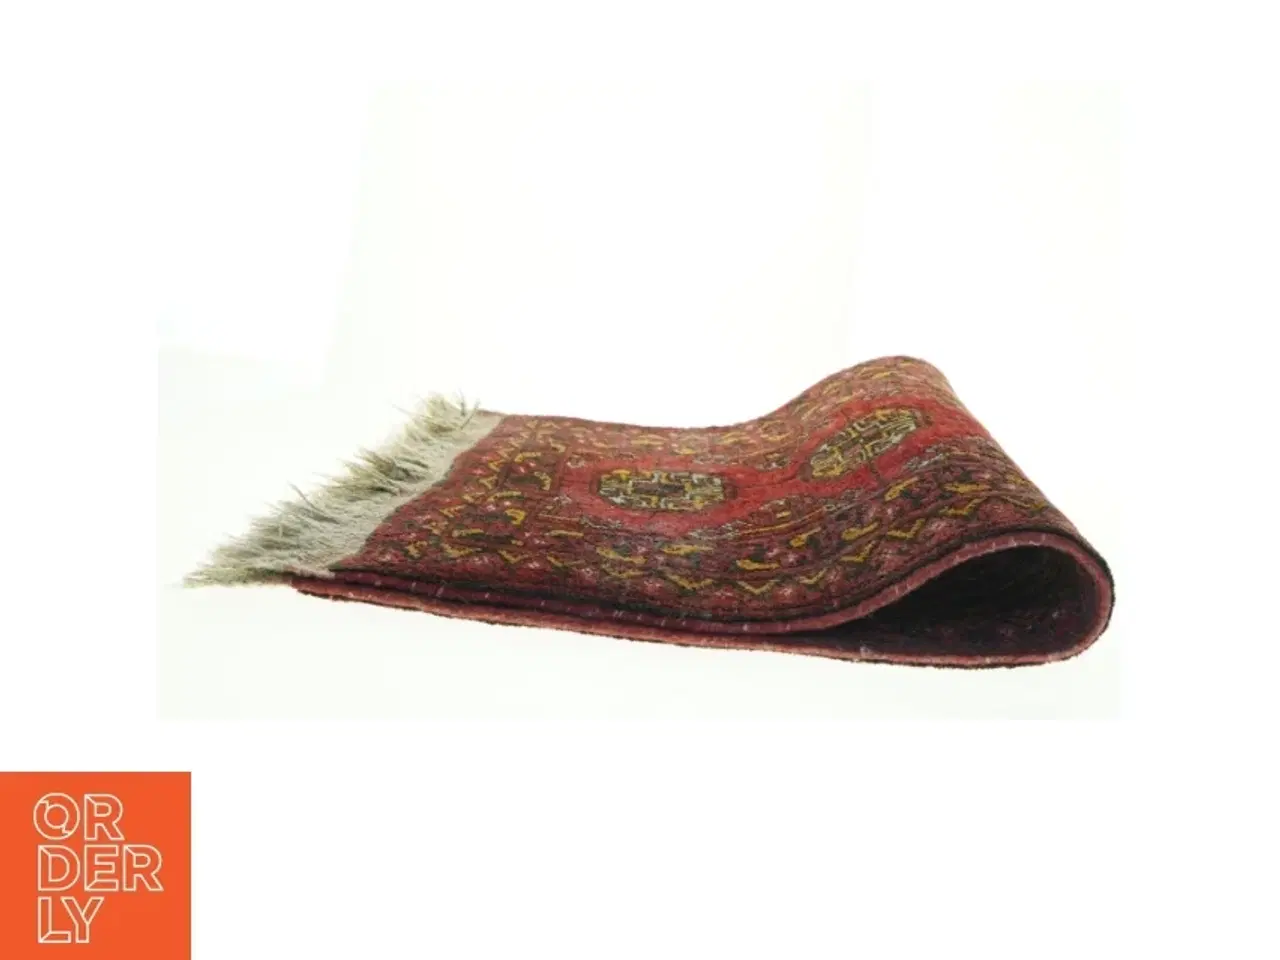 Billede 2 - Orientalsk tæppe (str. 105 x 55 cm)